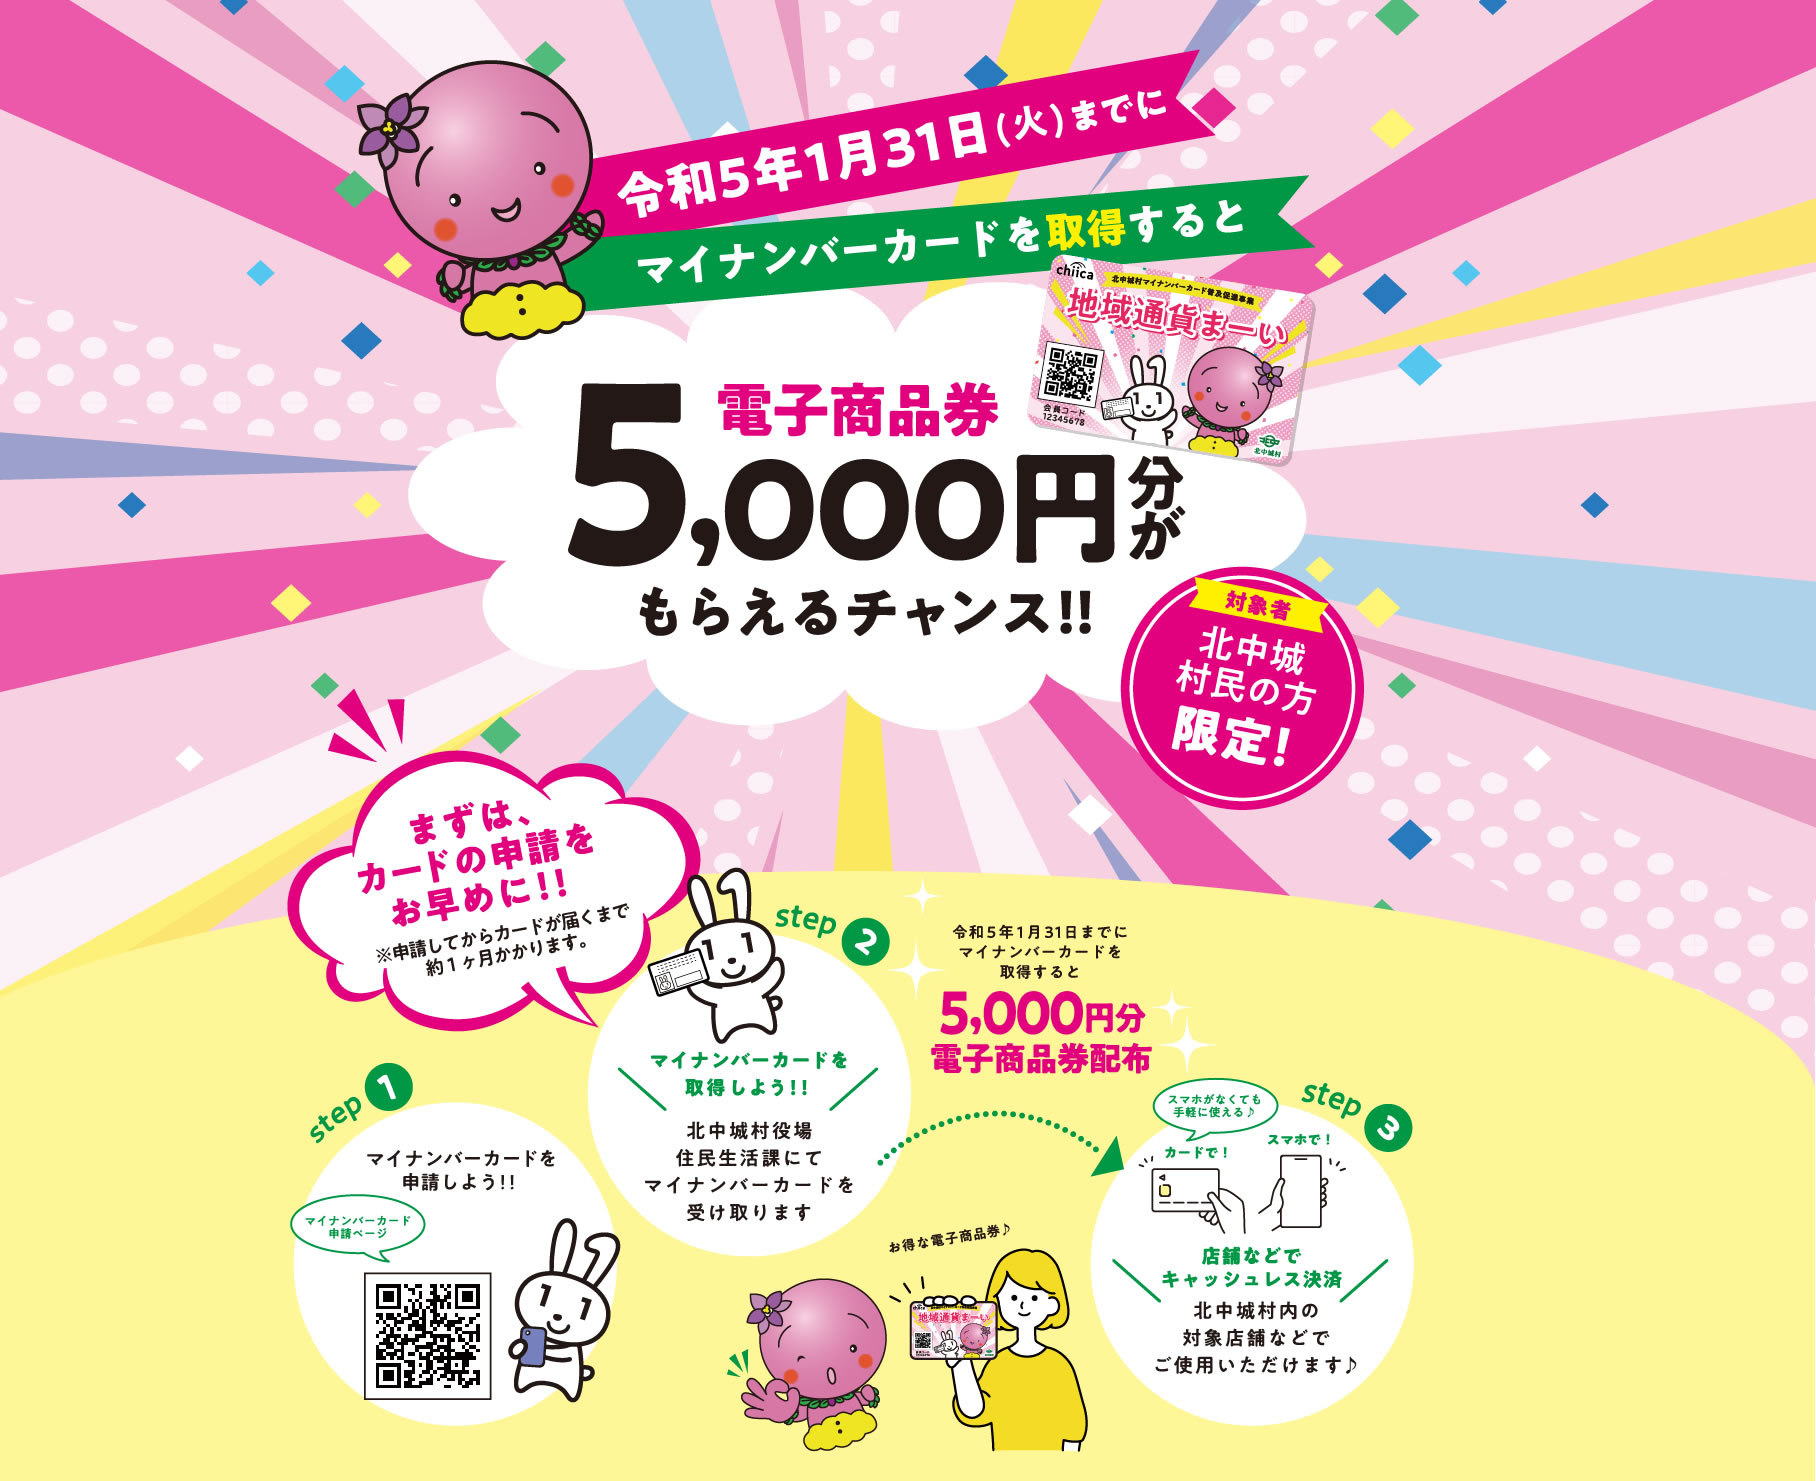 令和5年1月31日（火）までにマイナンバーカードを取得すると電子商品券5,000円分がもらえるチャンス!!